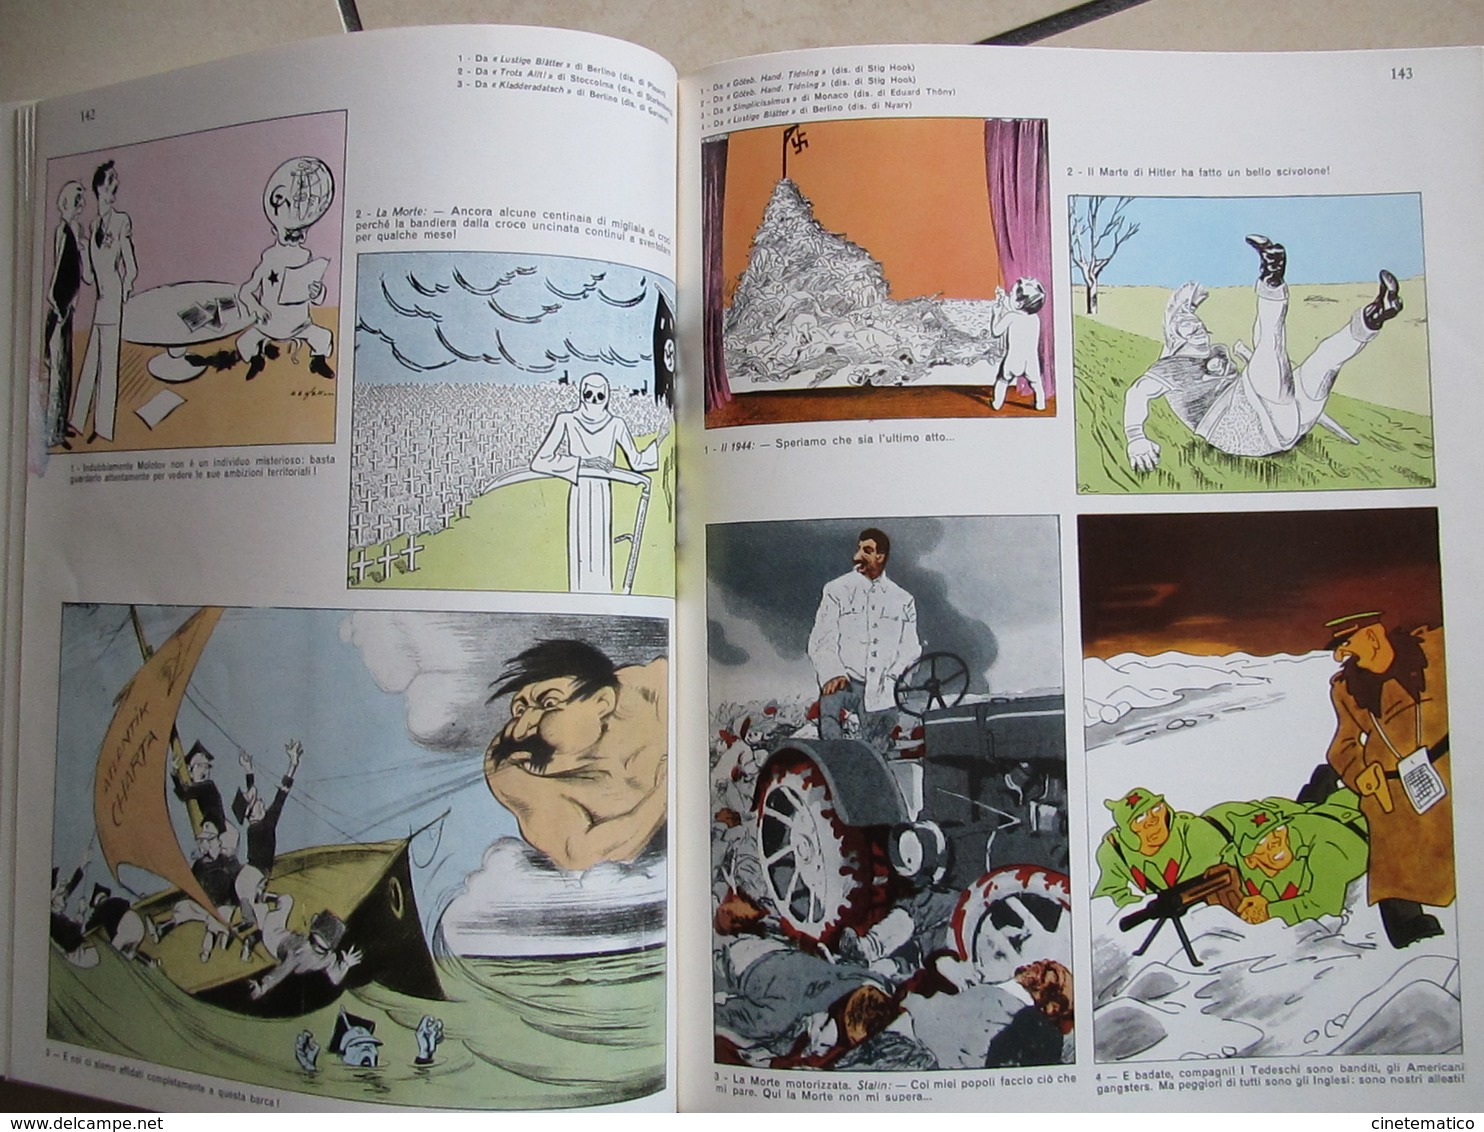 libro/book/livre/buch "La caricatura internazionale durante la seconda guerra mondiale"